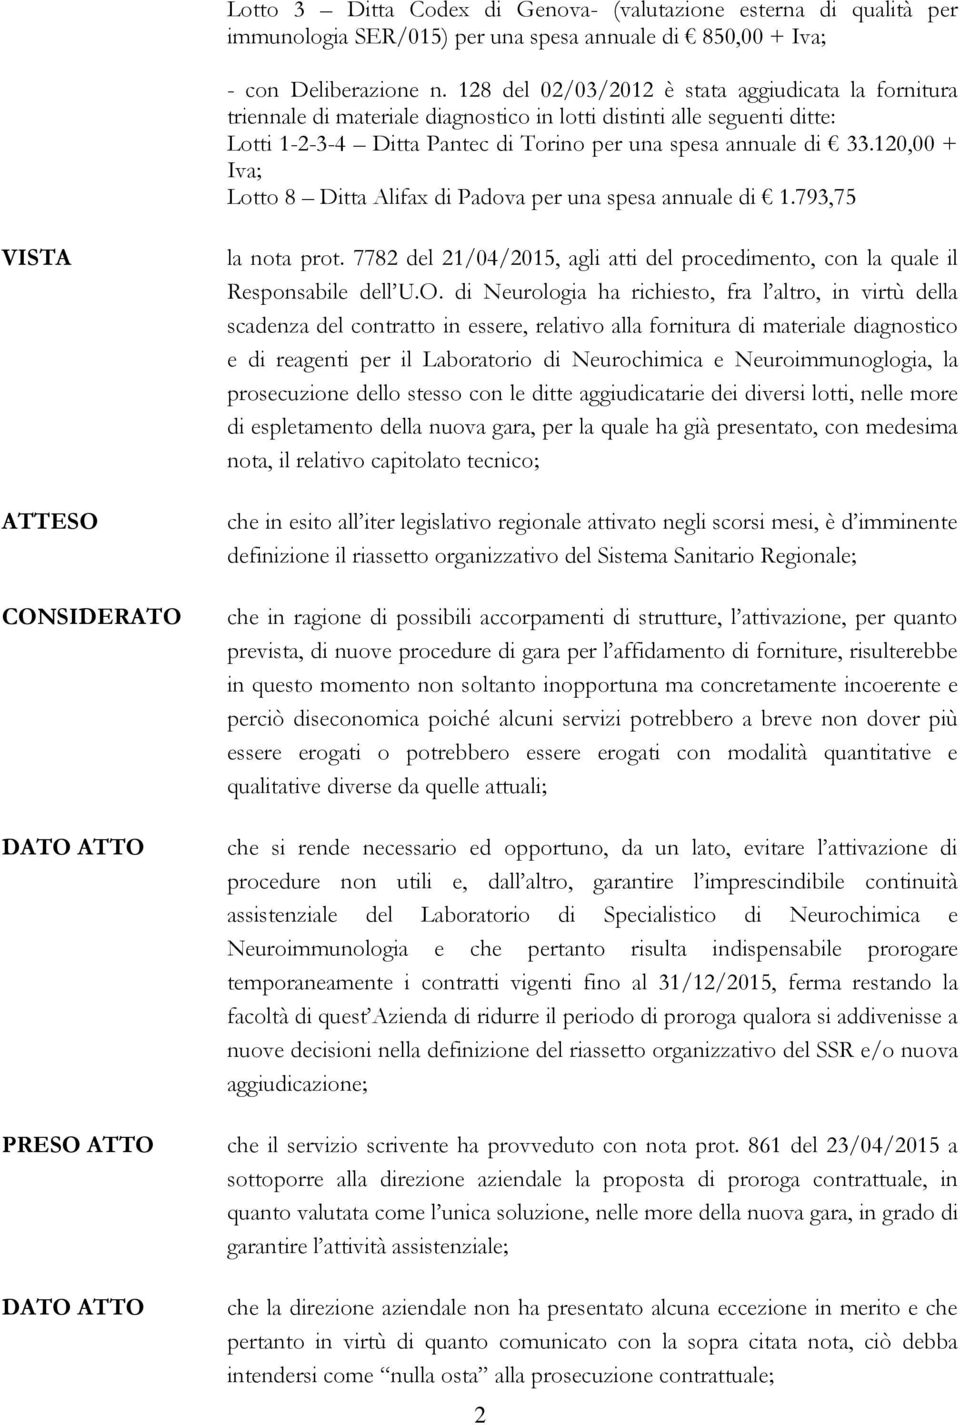 120,00 + Iva; Lotto 8 Ditta Alifax di Padova per una spesa annuale di 1.793,75 ATTESO CONSIDERATO DATO ATTO PRESO ATTO DATO ATTO la nota prot.